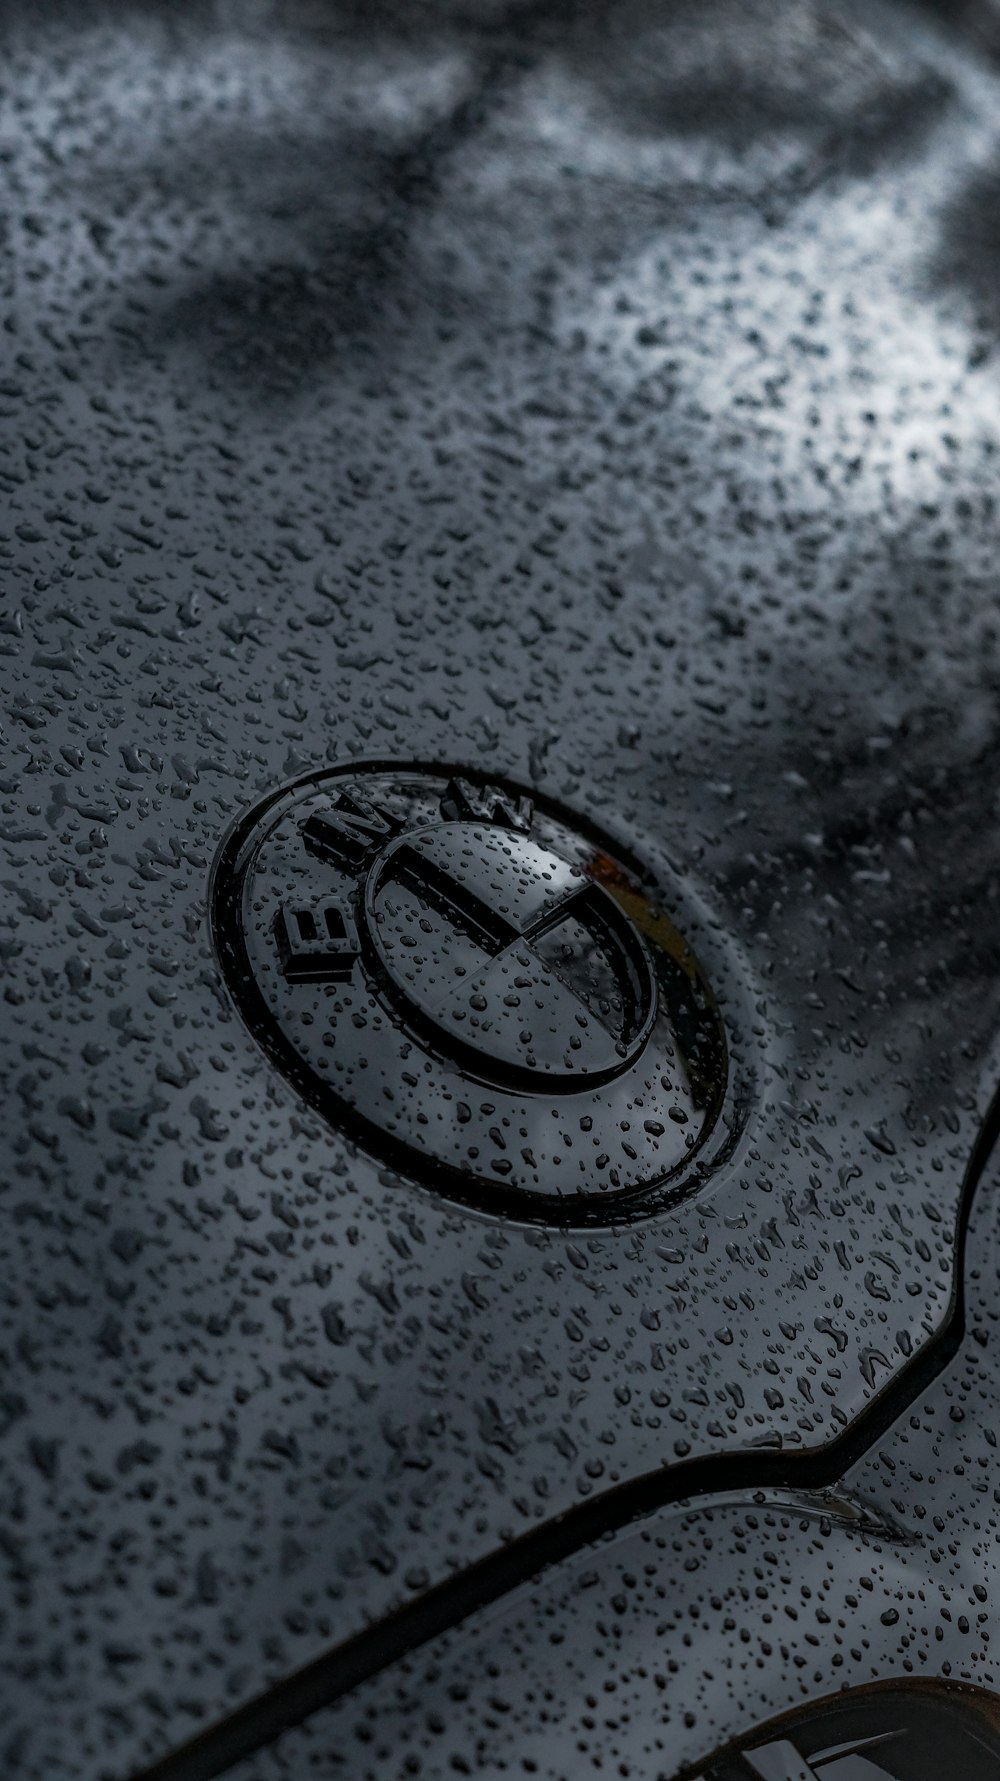 Eine Nahaufnahme des Emblems eines Autos auf einer nassen Oberfläche